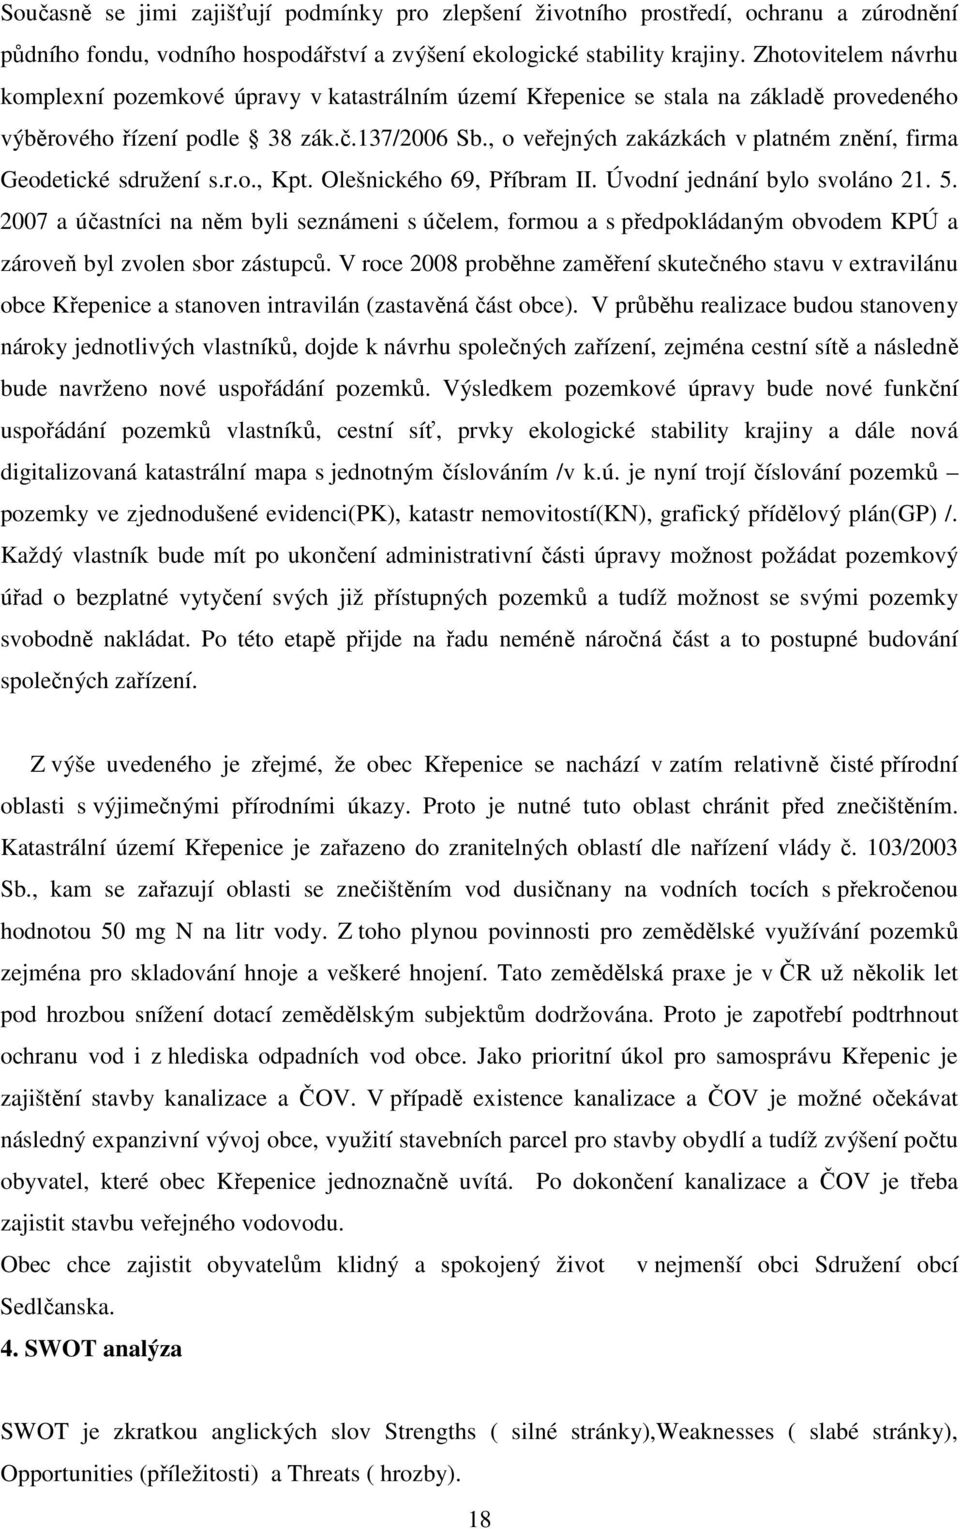 , o veřejných zakázkách v platném znění, firma Geodetické sdružení s.r.o., Kpt. Olešnického 69, Příbram II. Úvodní jednání bylo svoláno 21. 5.